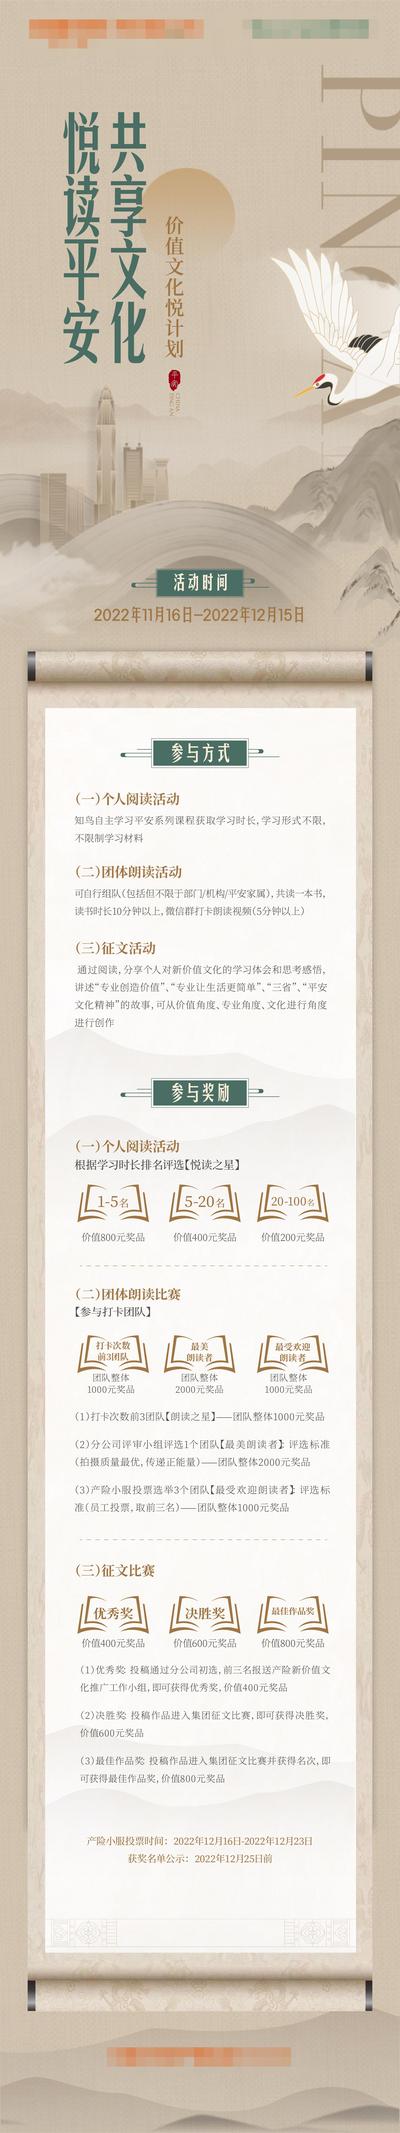 【南门网】海报 长图 阅读 读书会 文化 中式 中国风 底蕴 卷轴 仙鹤